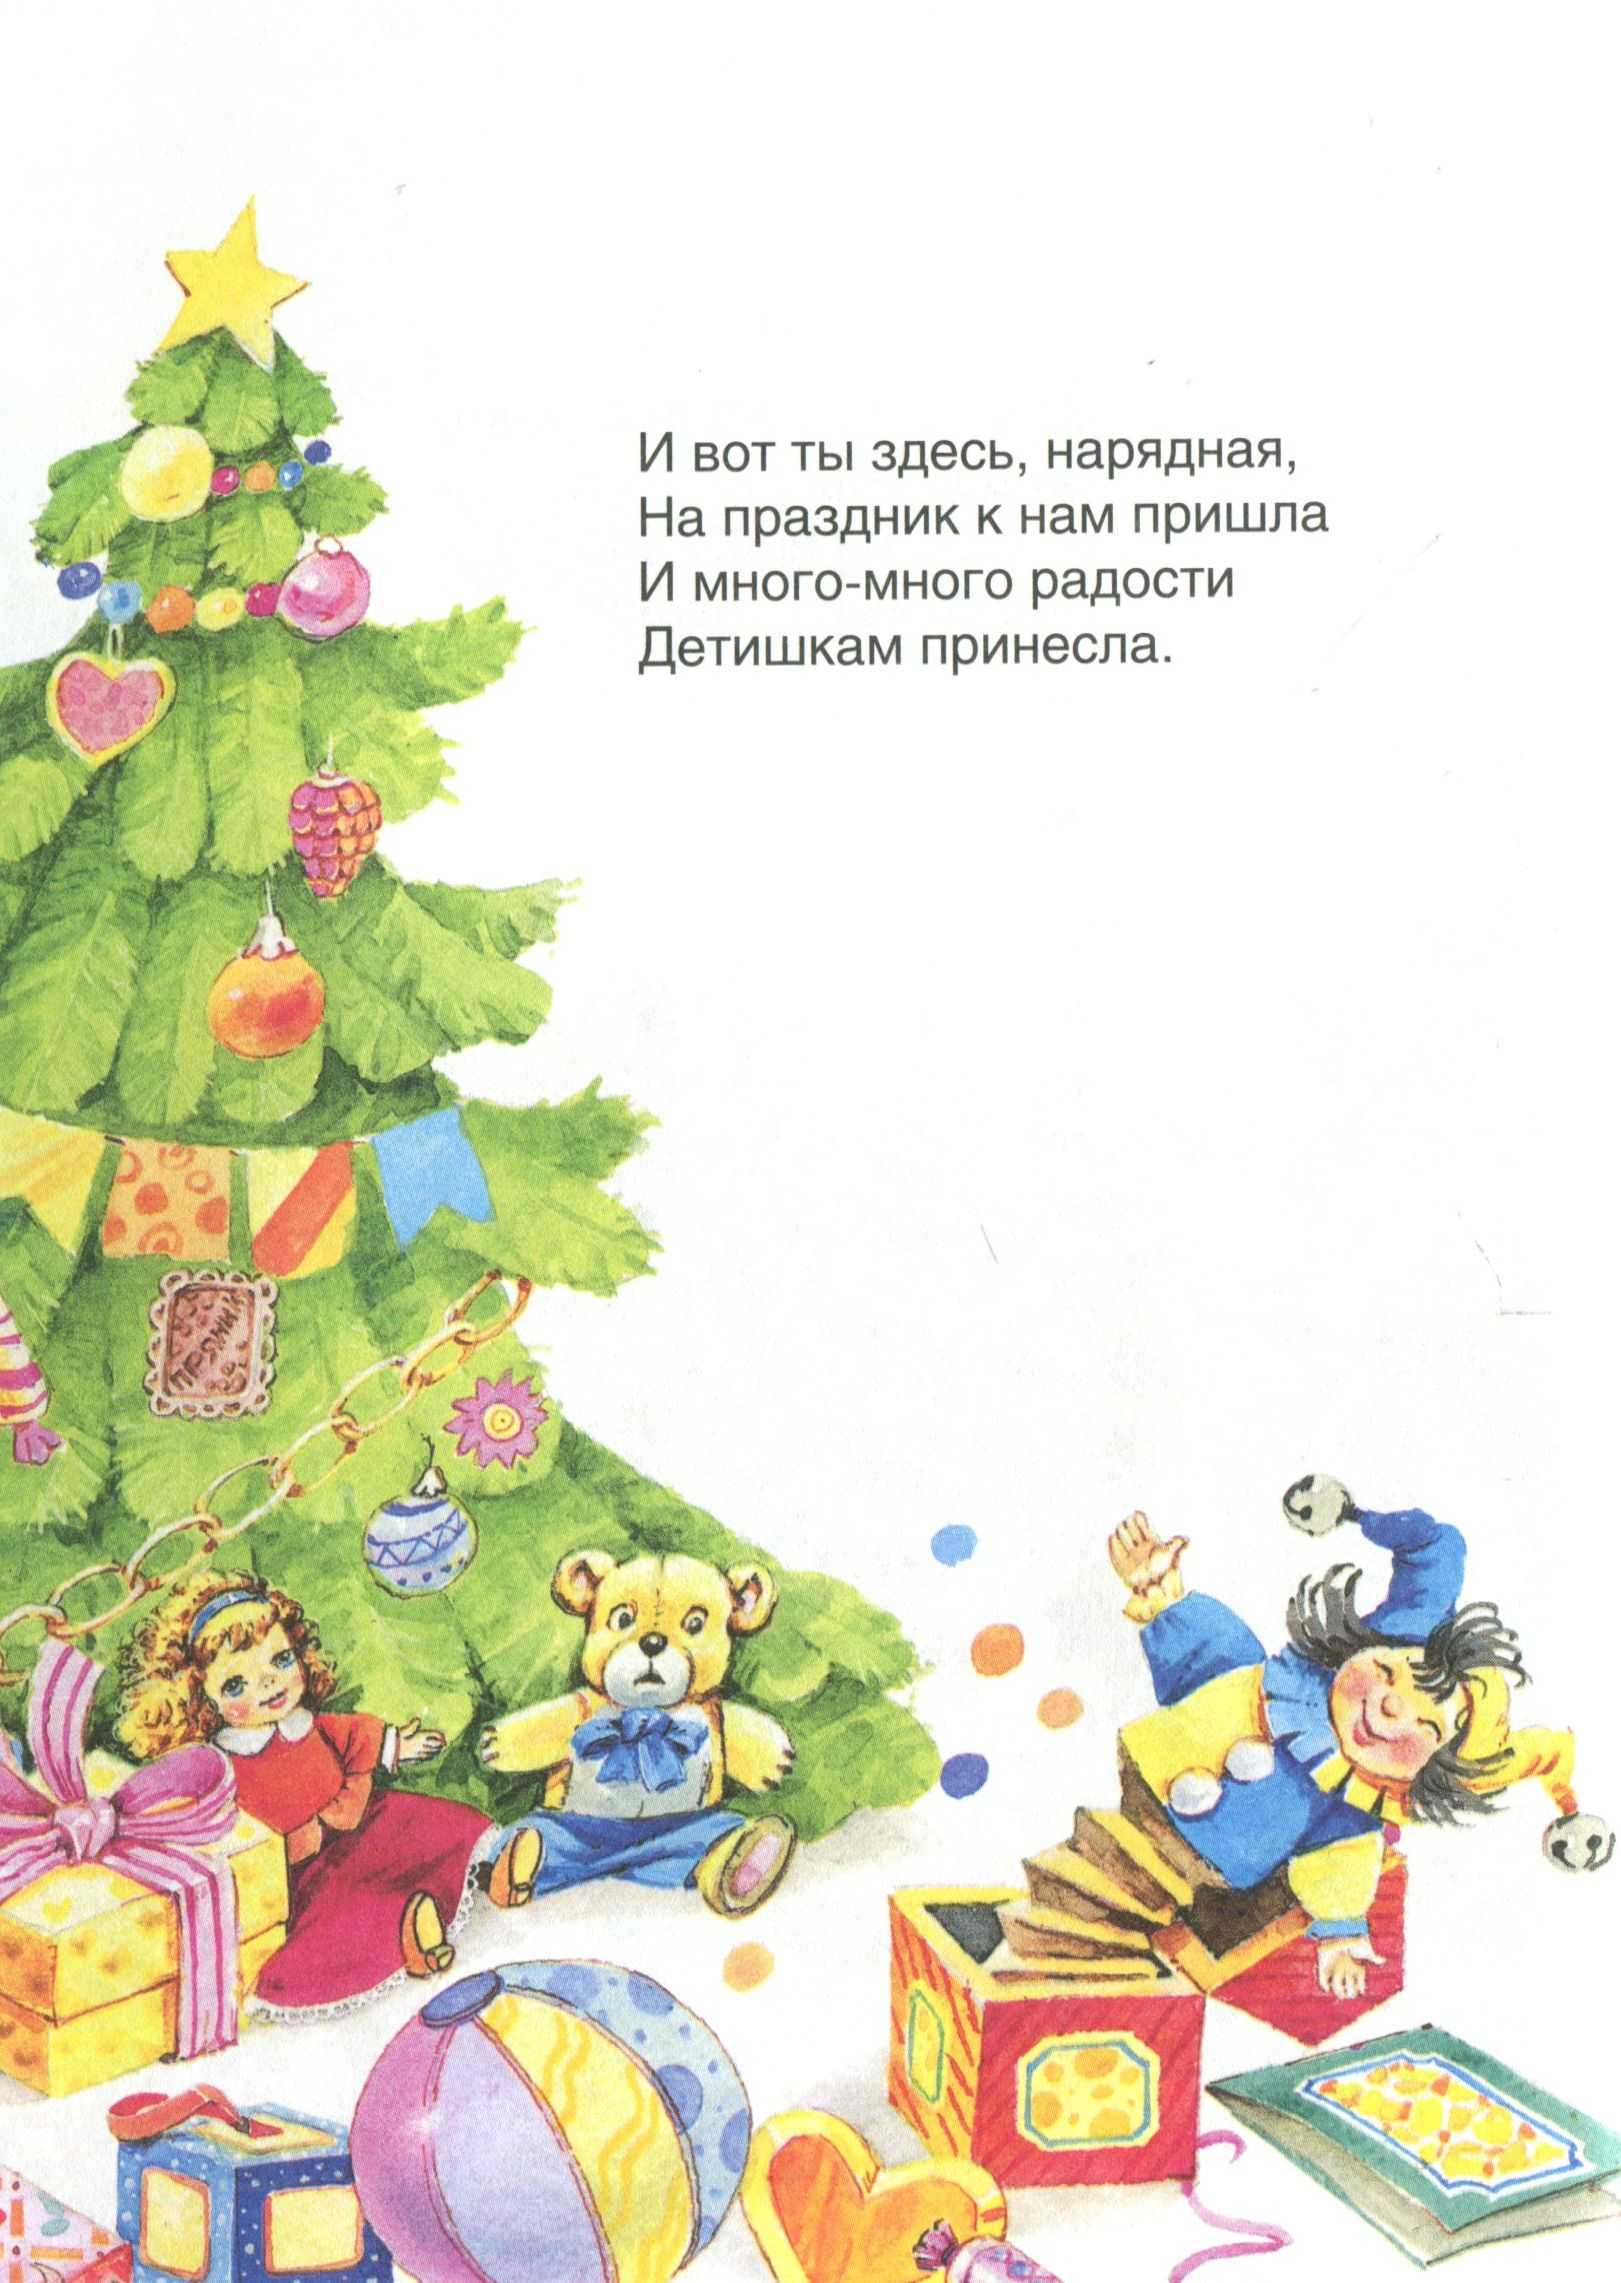 Новогодние стихи для елки в детском саду и школе лучших современных поэтов и классиков